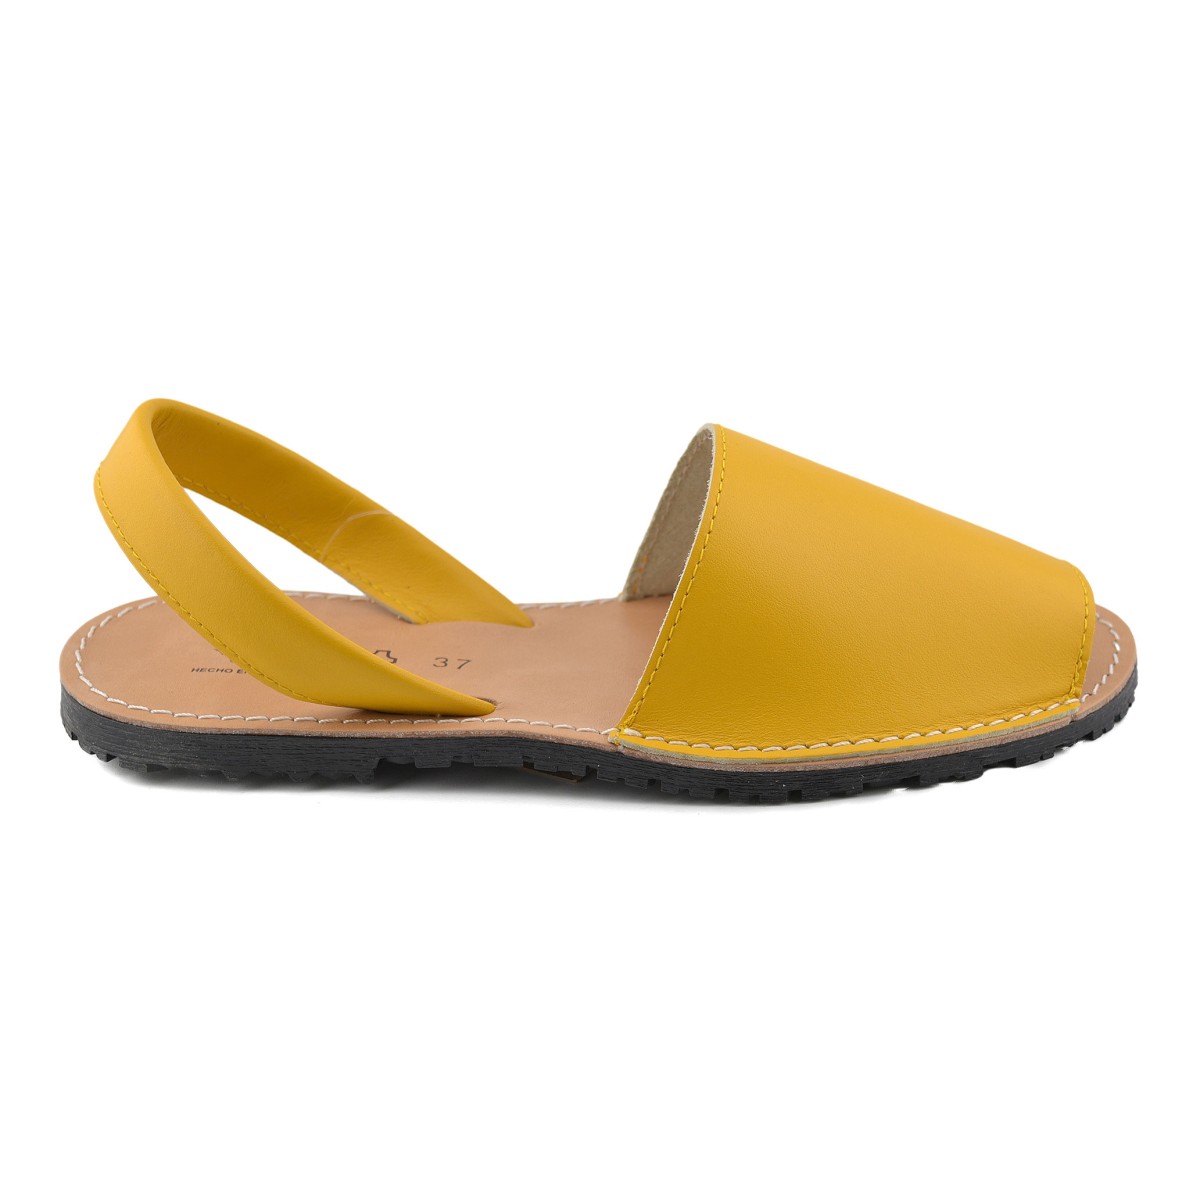 Sandales en cuir jaune d'Avarcas Menorquinas par CBP